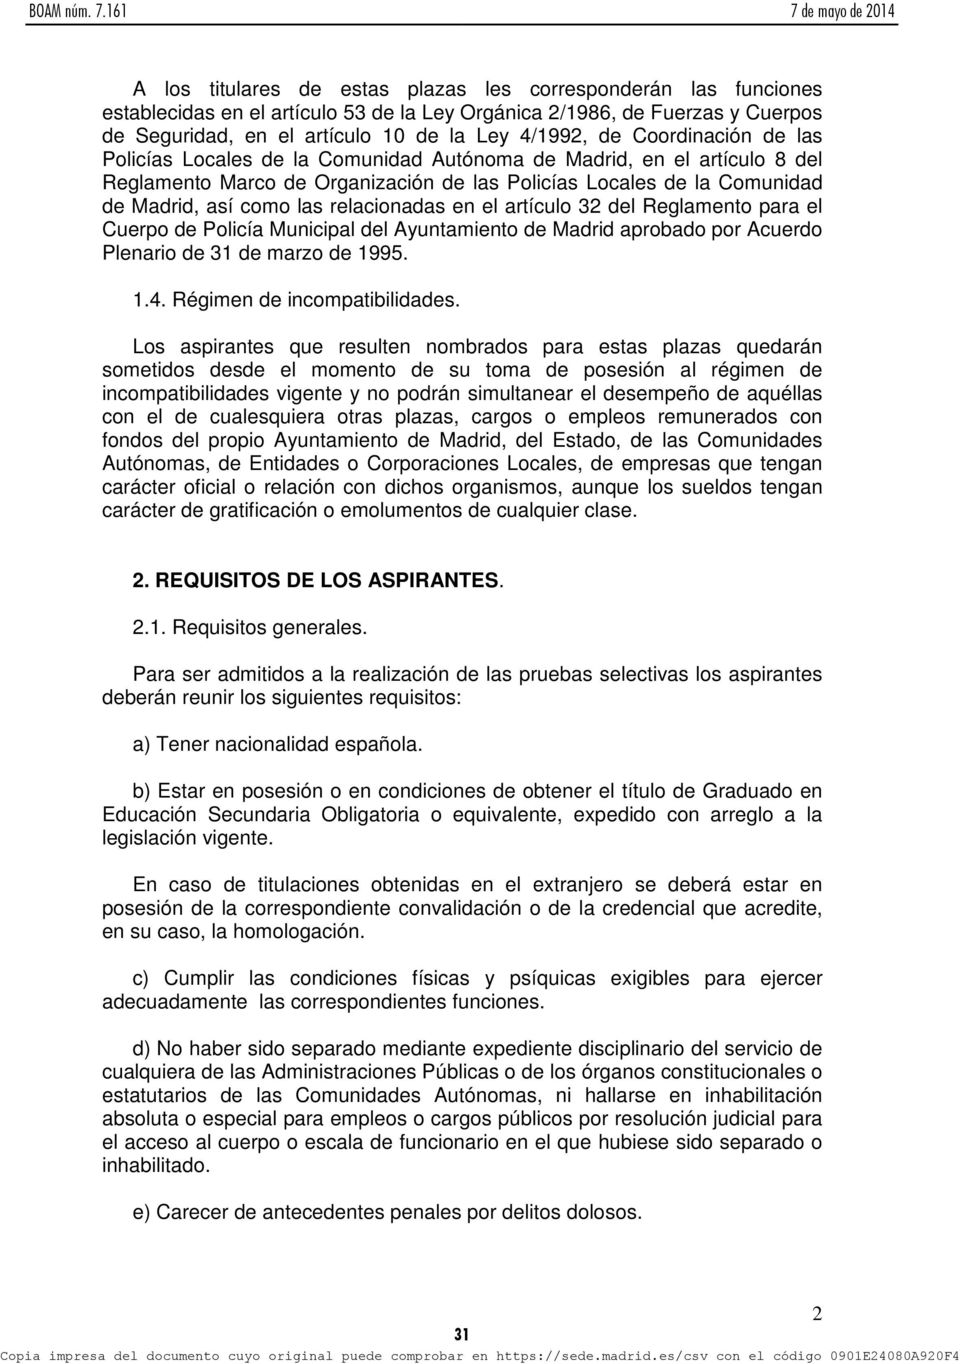 relacionadas en el artículo 32 del Reglamento para el Cuerpo de Policía Municipal del Ayuntamiento de Madrid aprobado por Acuerdo Plenario de 31 de marzo de 1995. 1.4. Régimen de incompatibilidades.